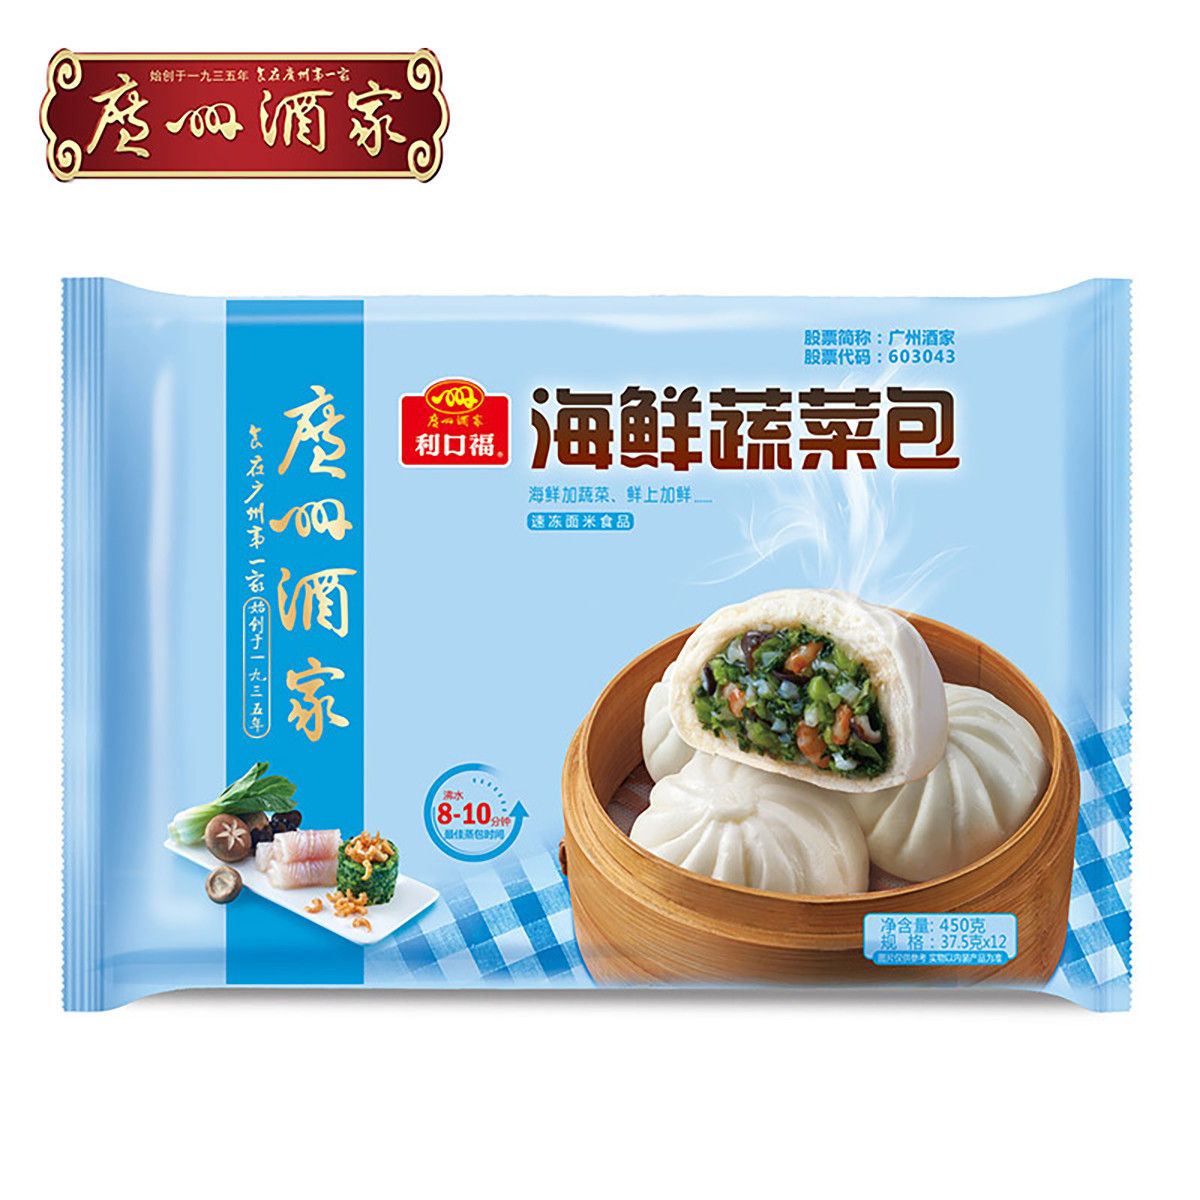 广州酒家2019年新品海鲜蔬菜包450g广式早茶早餐点心